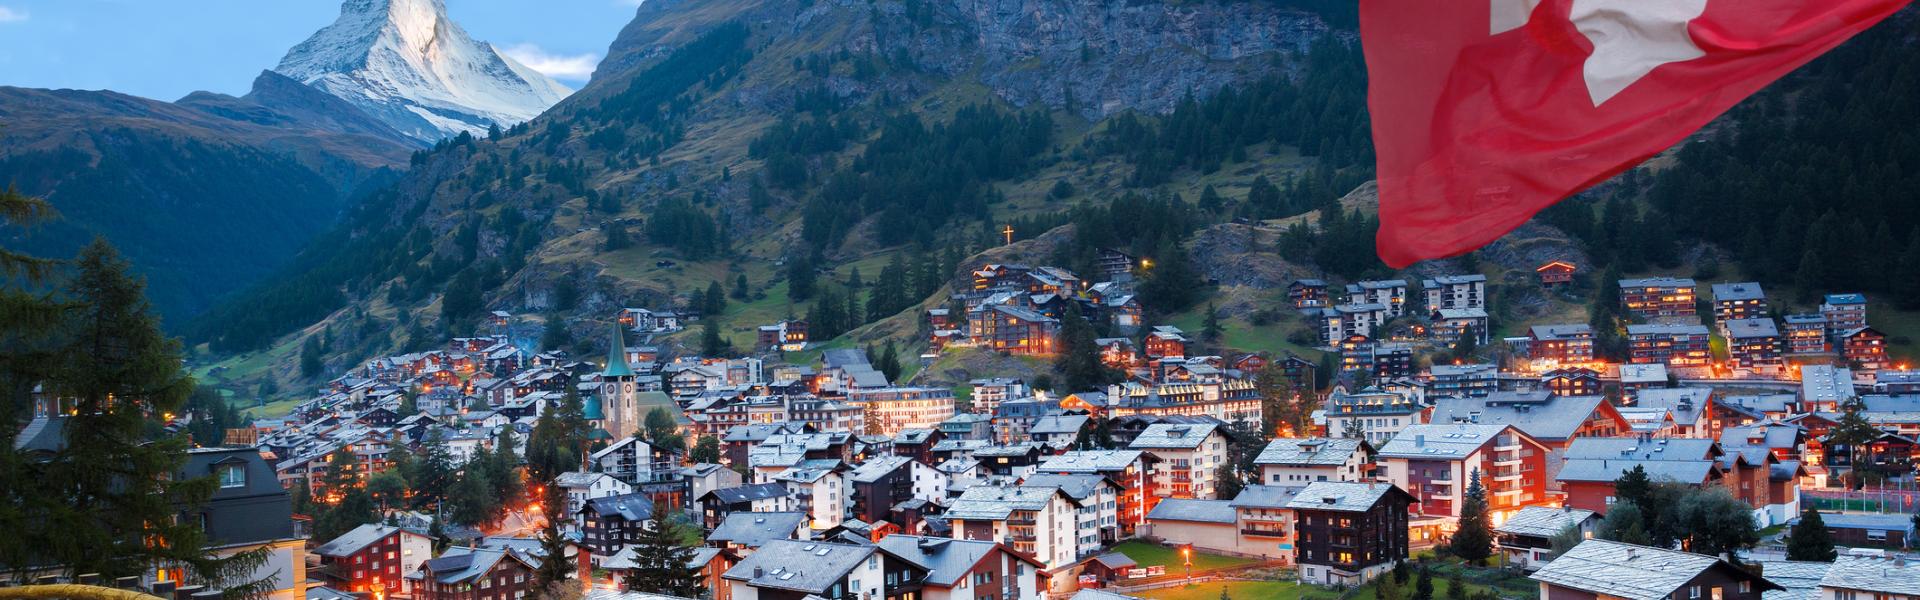 Noclegi w Zermatt - HomeToGo